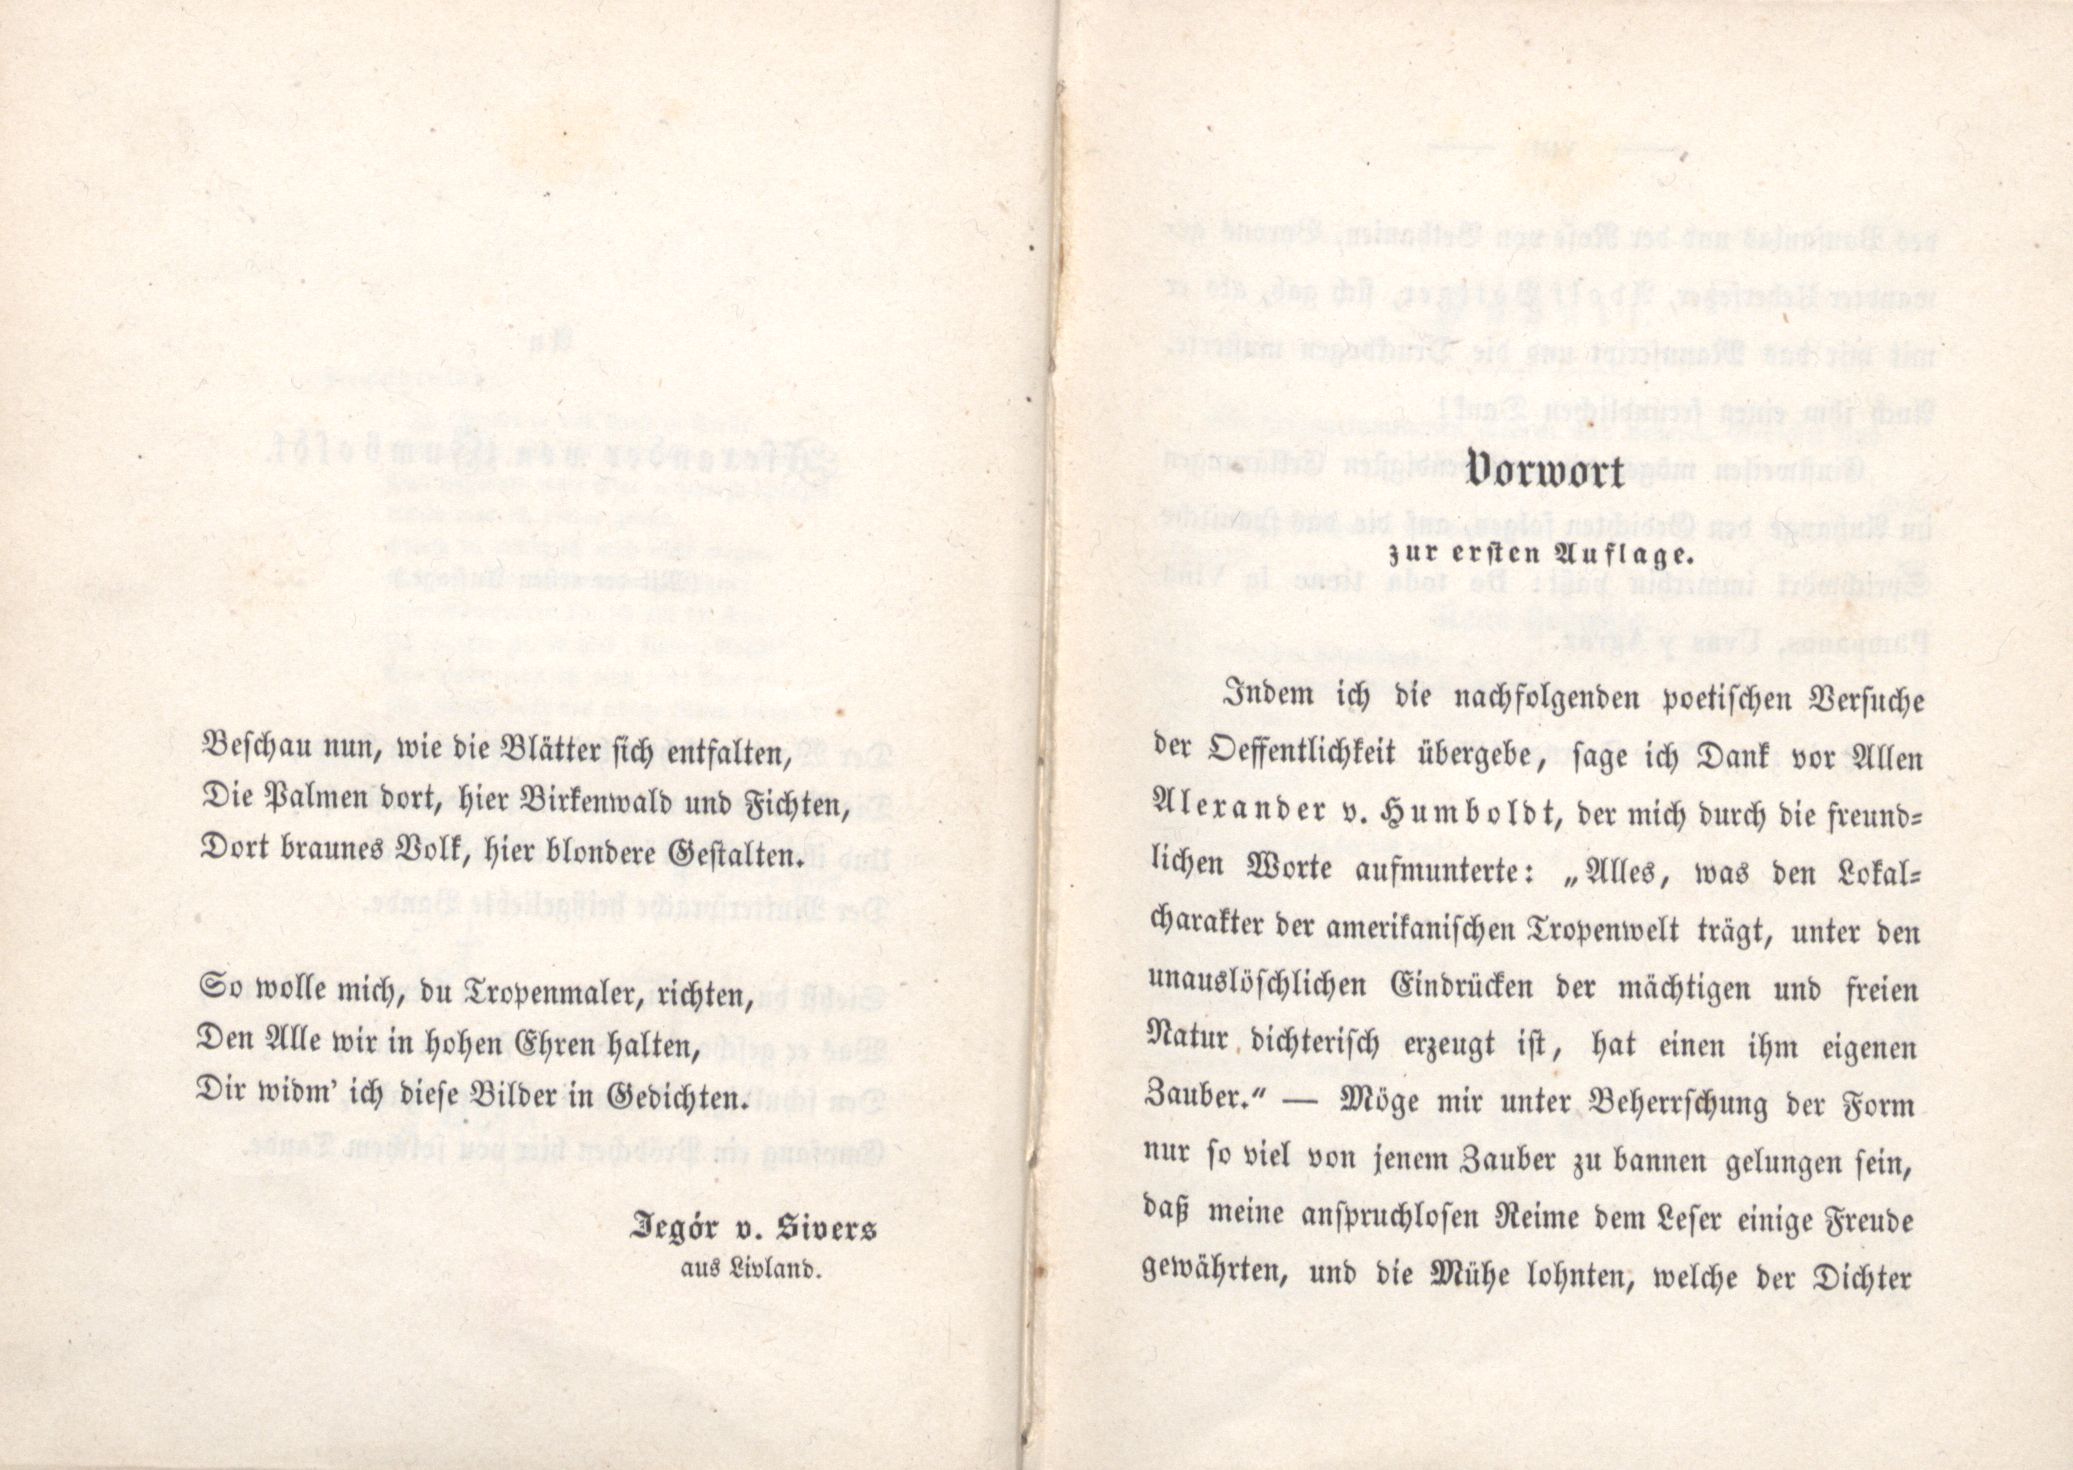 Palmen und Birken (1852) | 5. (VI-VII) Dedication, Foreword